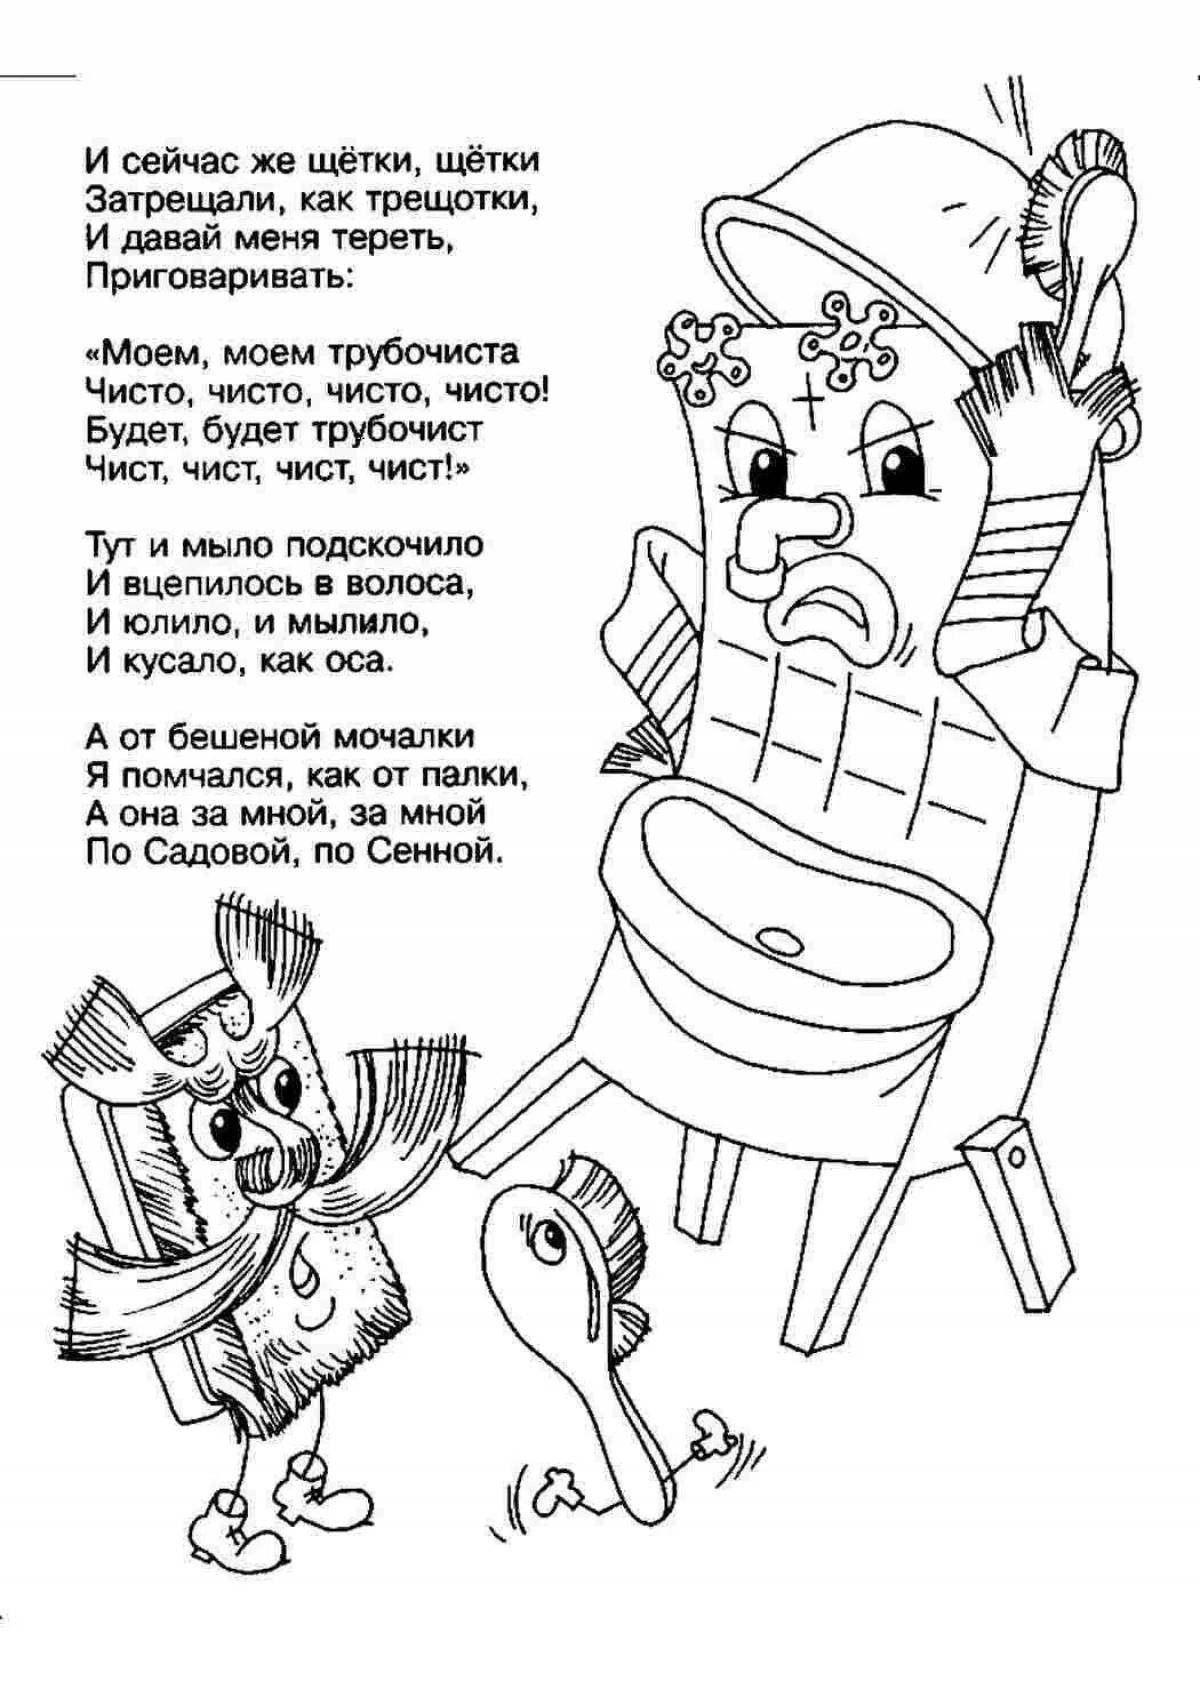 Charming Chukovsky coloring book